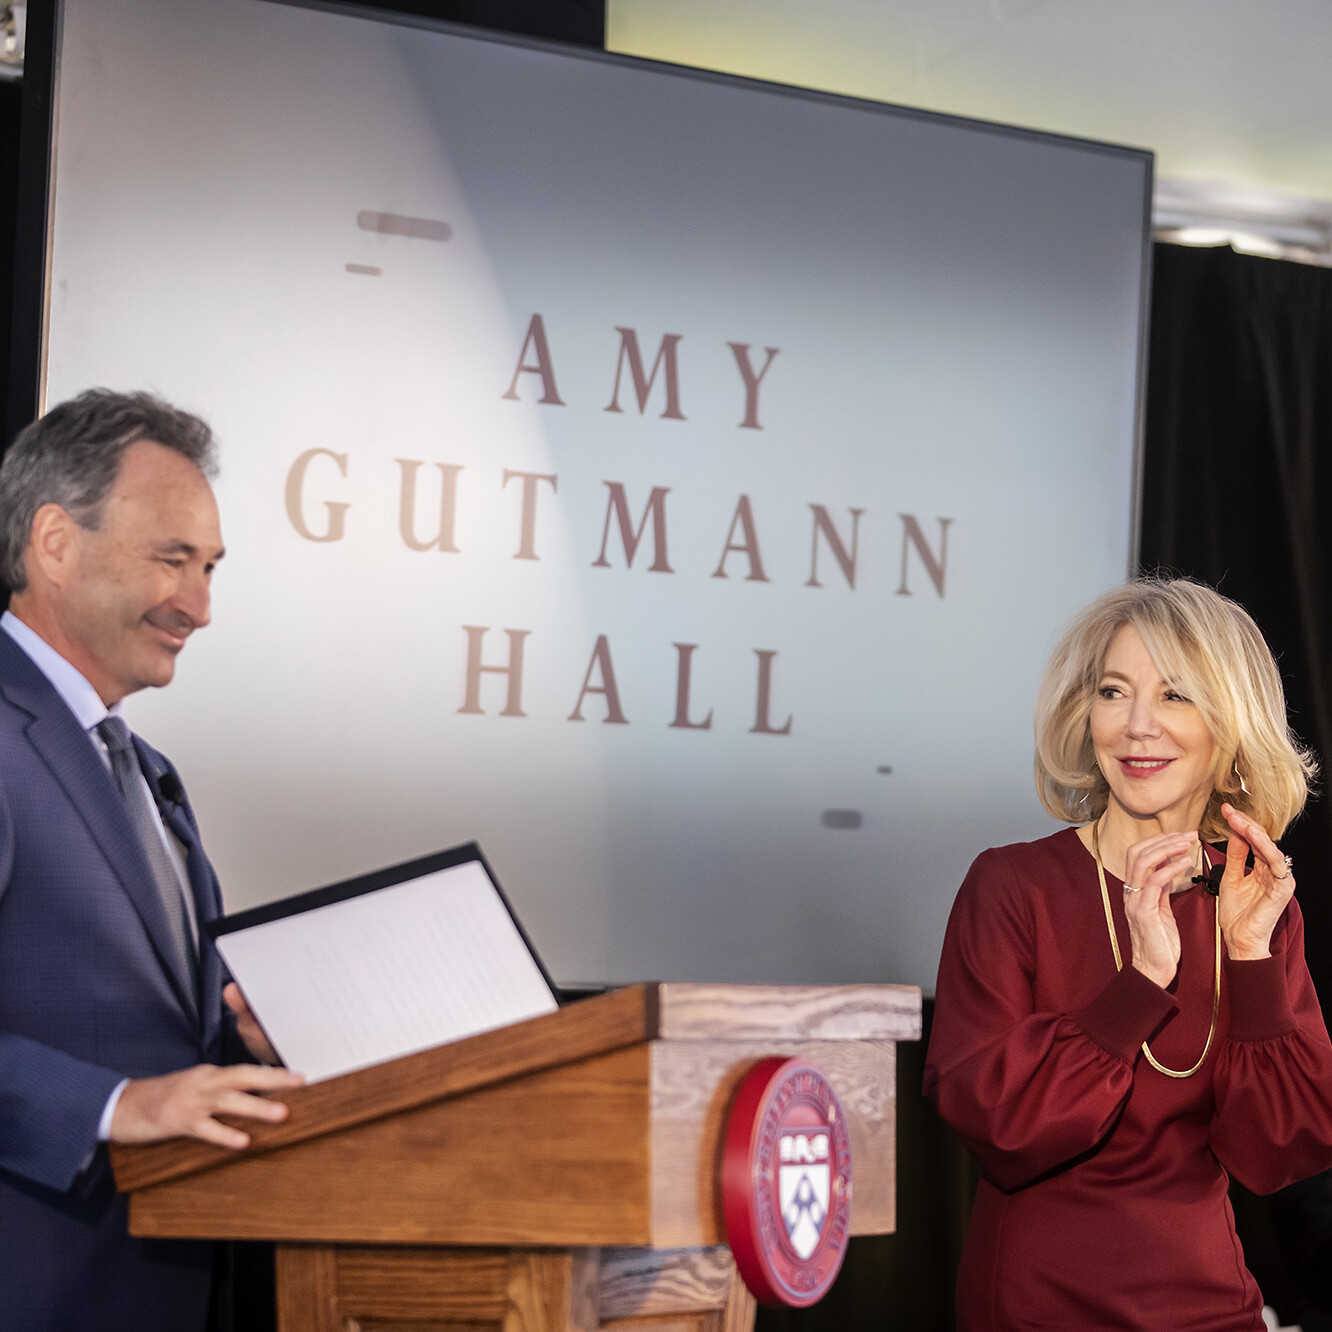 Amy Gutmann Penn President 2021 Amy Gutmann Hall – Data Science Building Groundbreaking